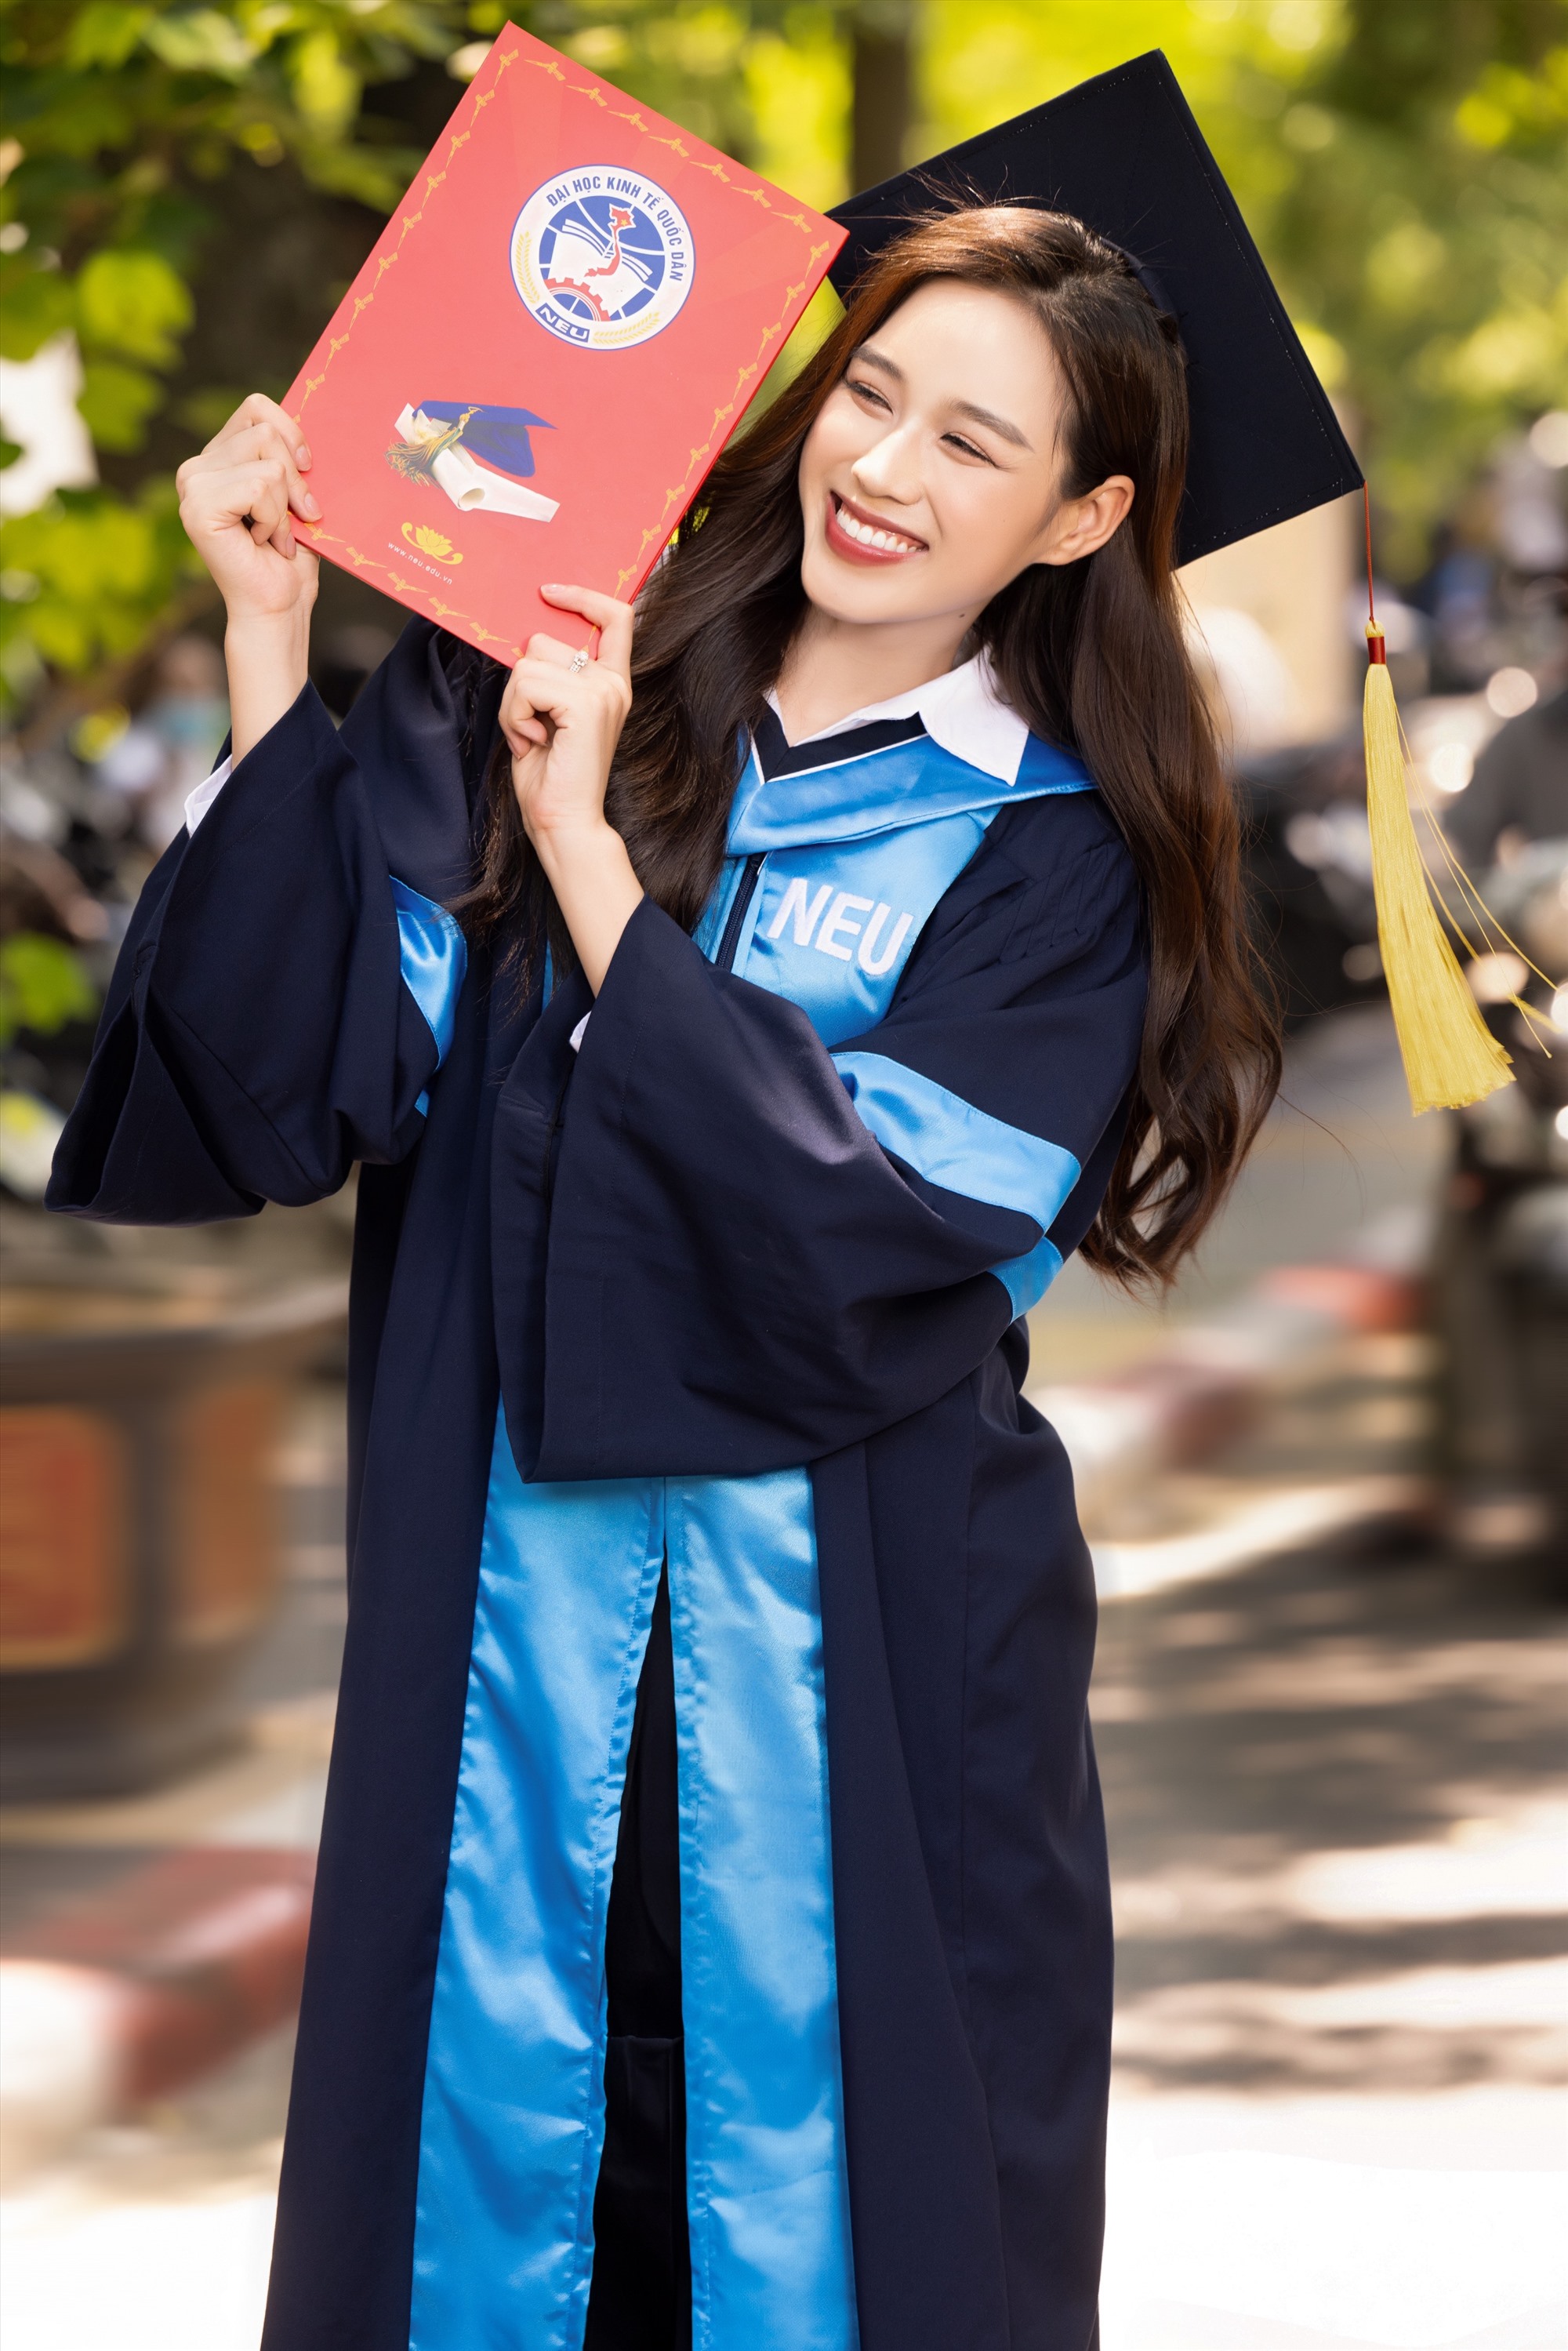 Hoa hậu Đỗ Hà trong ngày nhận bằng tốt nghiệp. Ảnh: Nhân vật cung cấp 